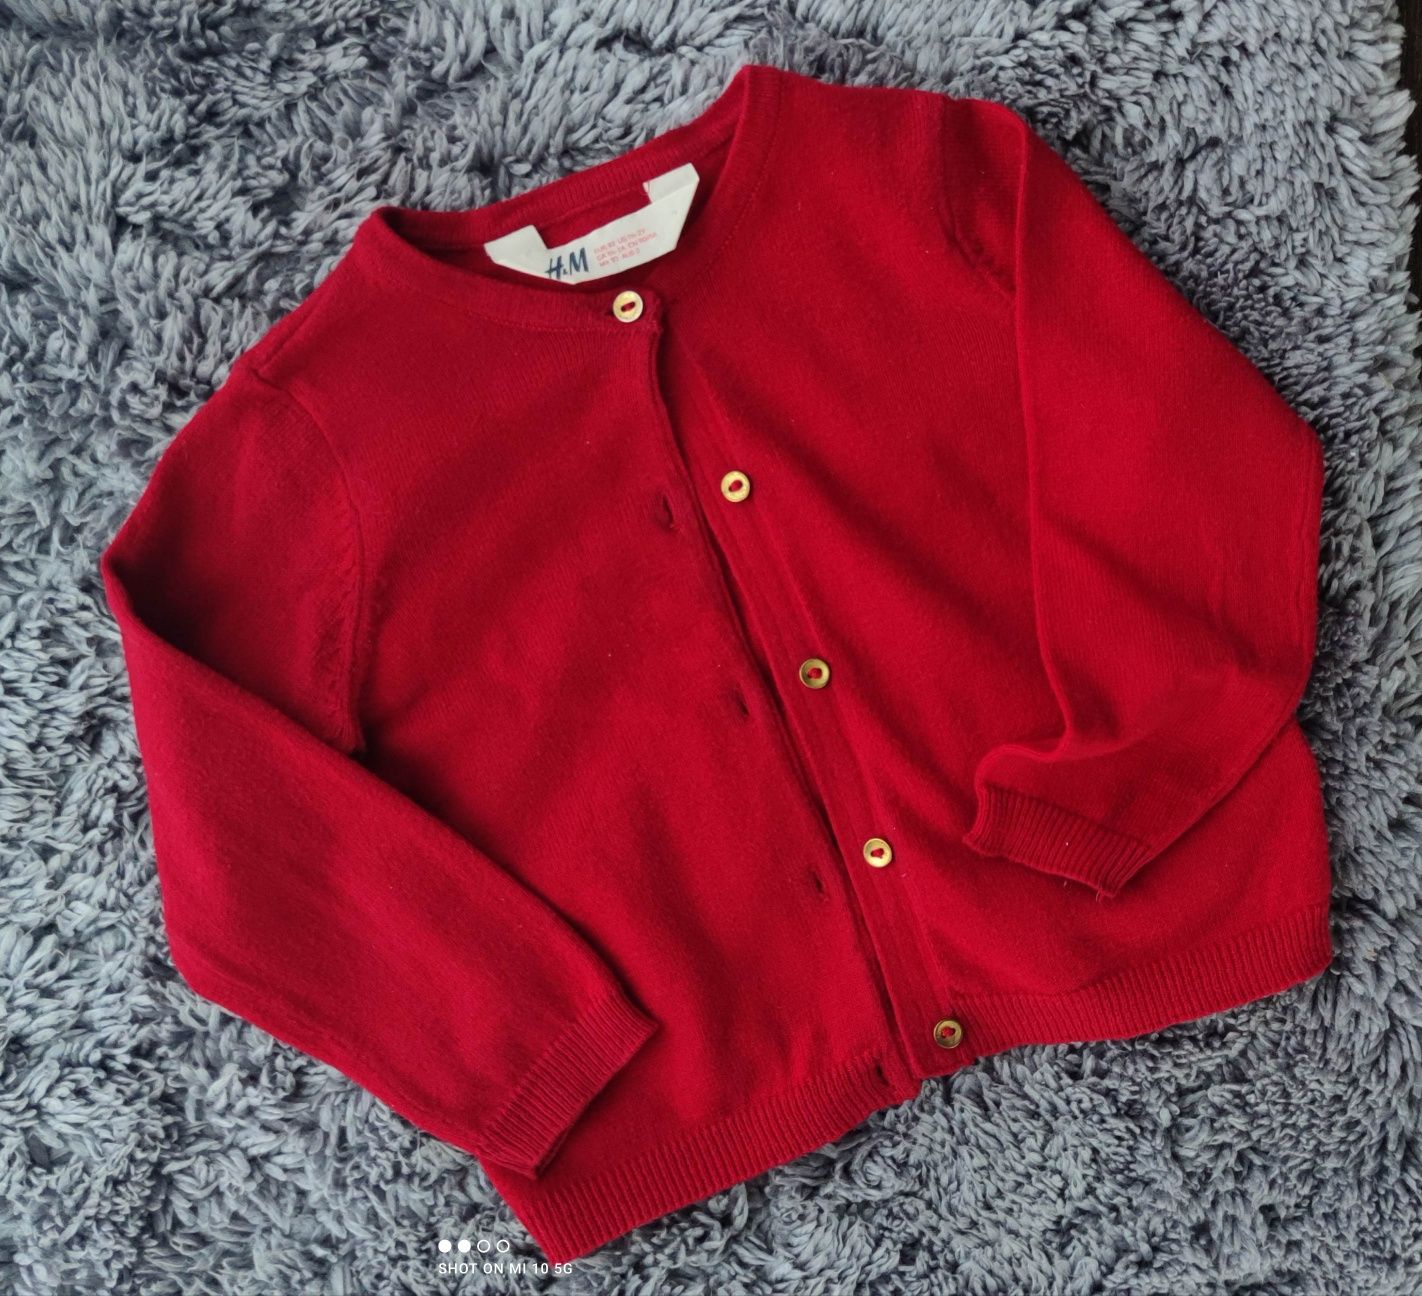 H&M sweterek czerwony guziczki 92